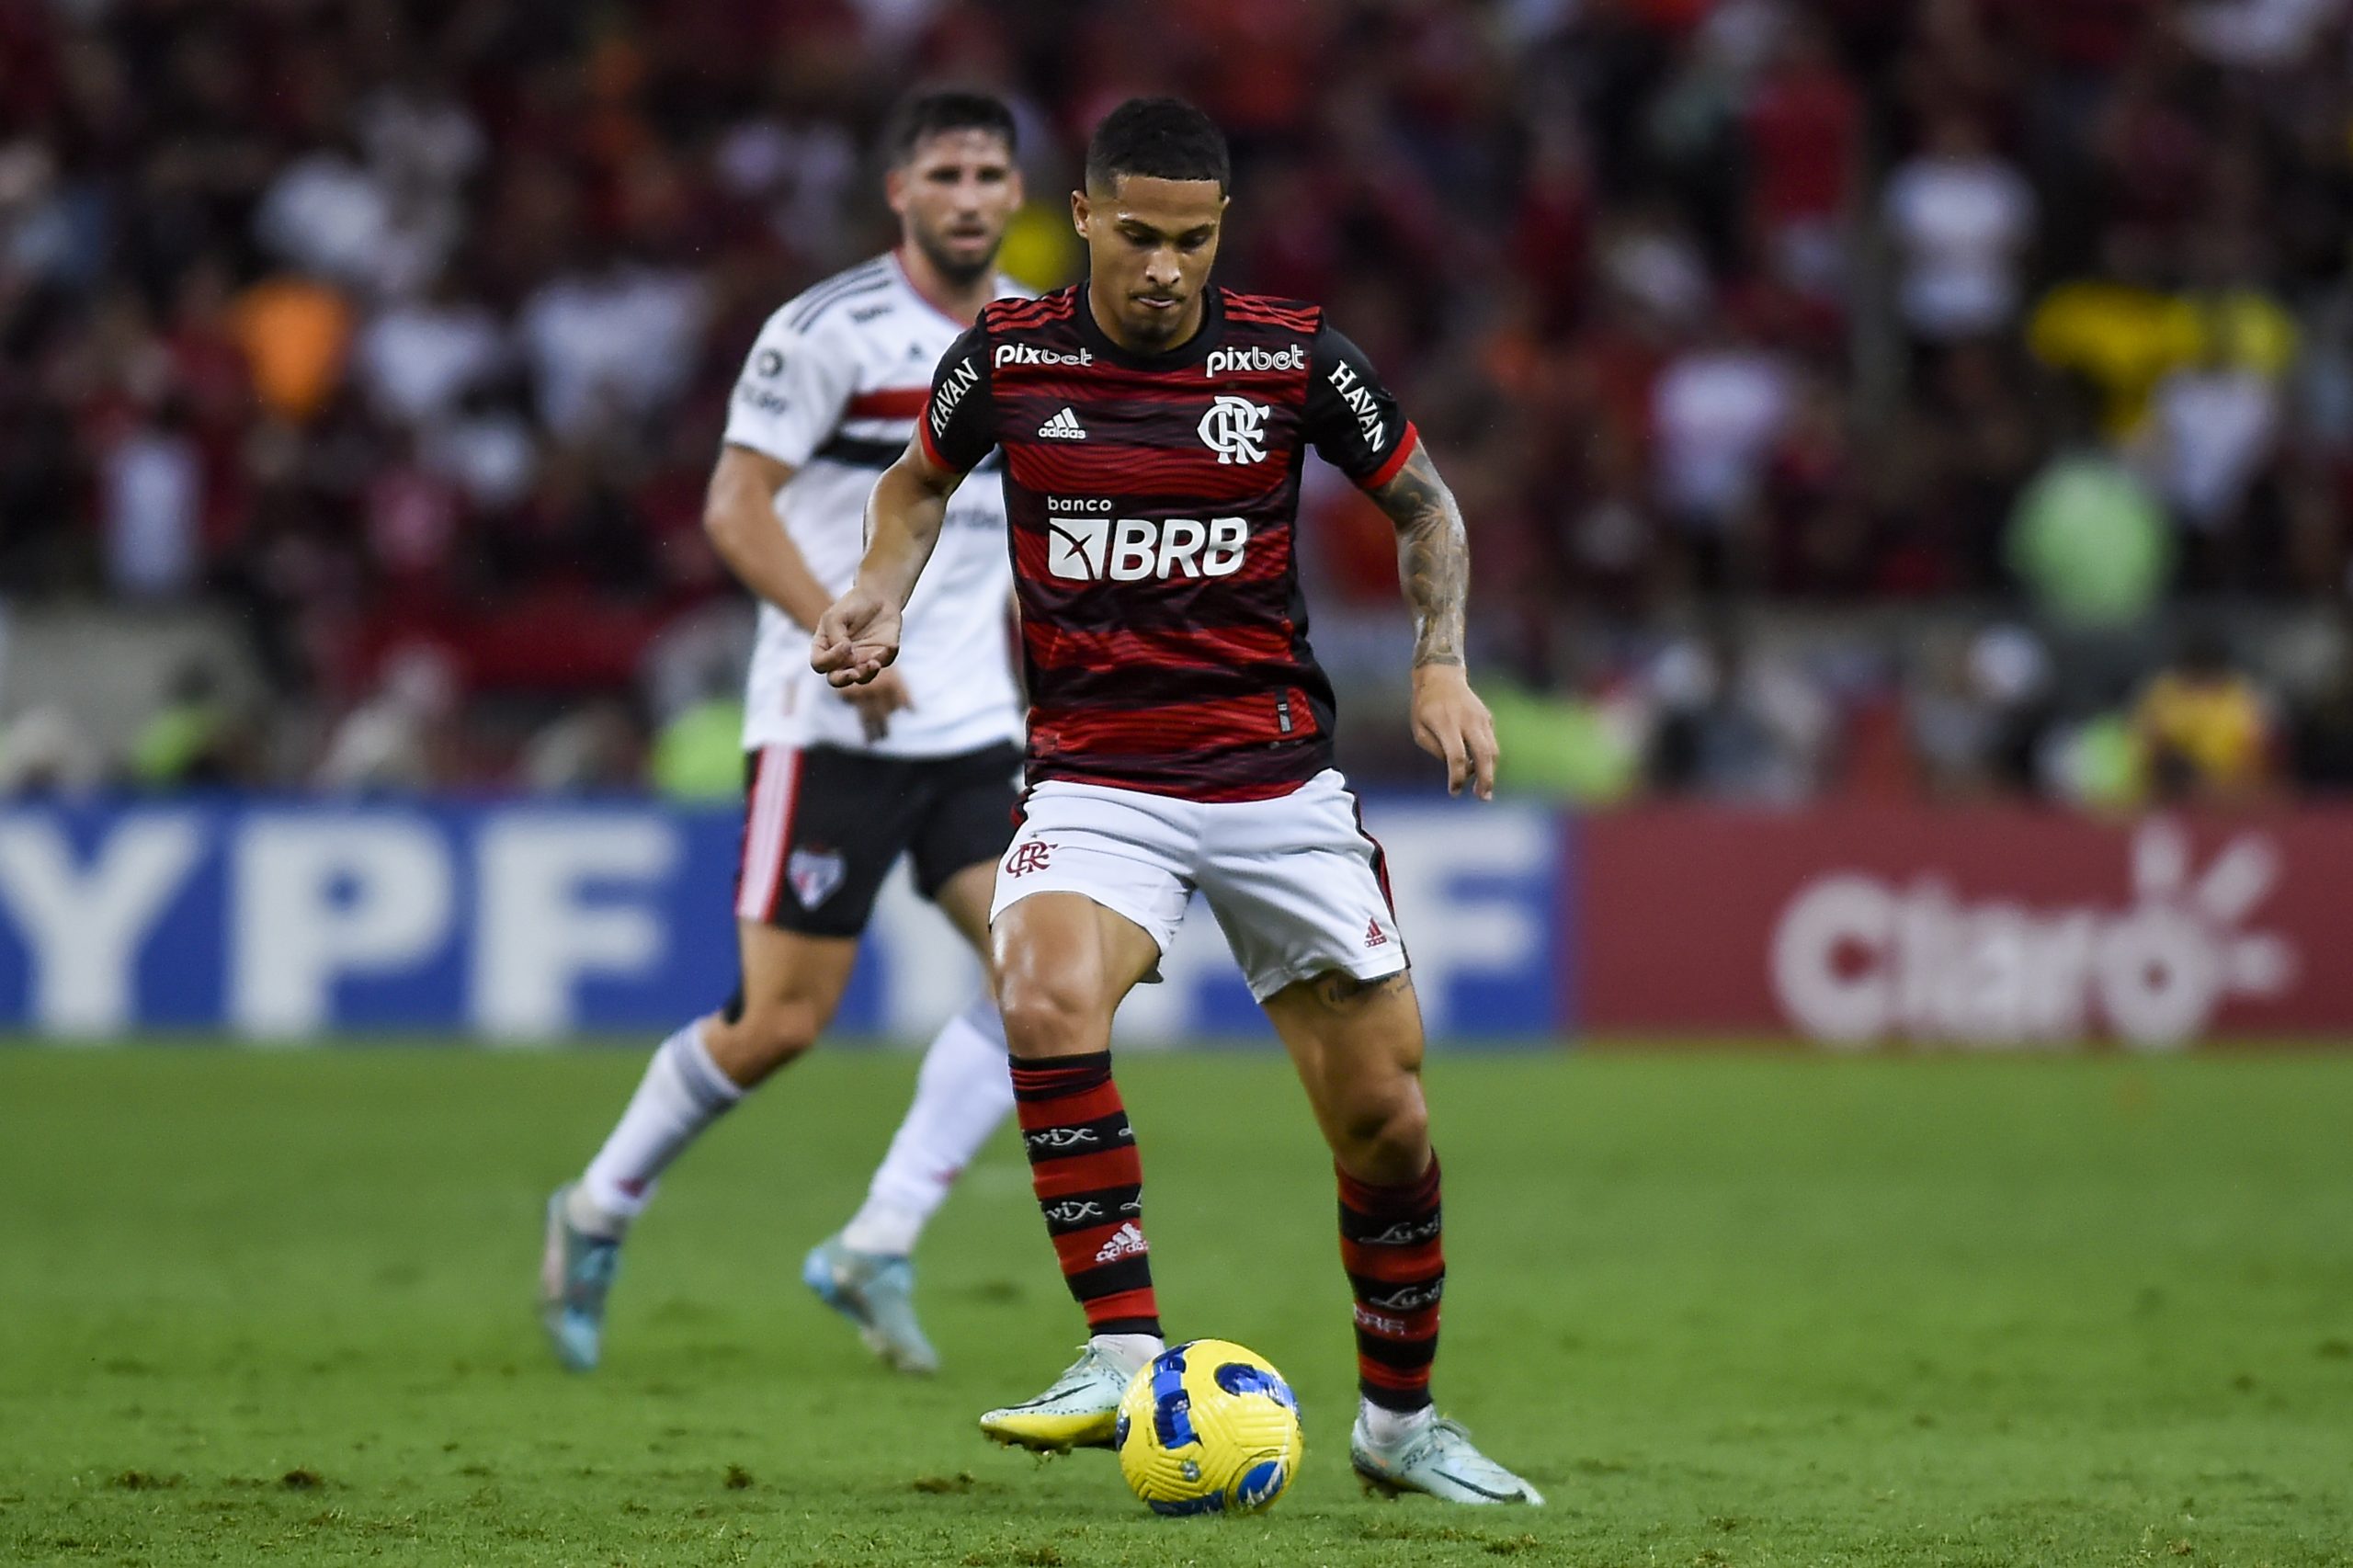 Oferta salarial do Flamengo não agrada staff de João Gomes e negociação por renovação emperra